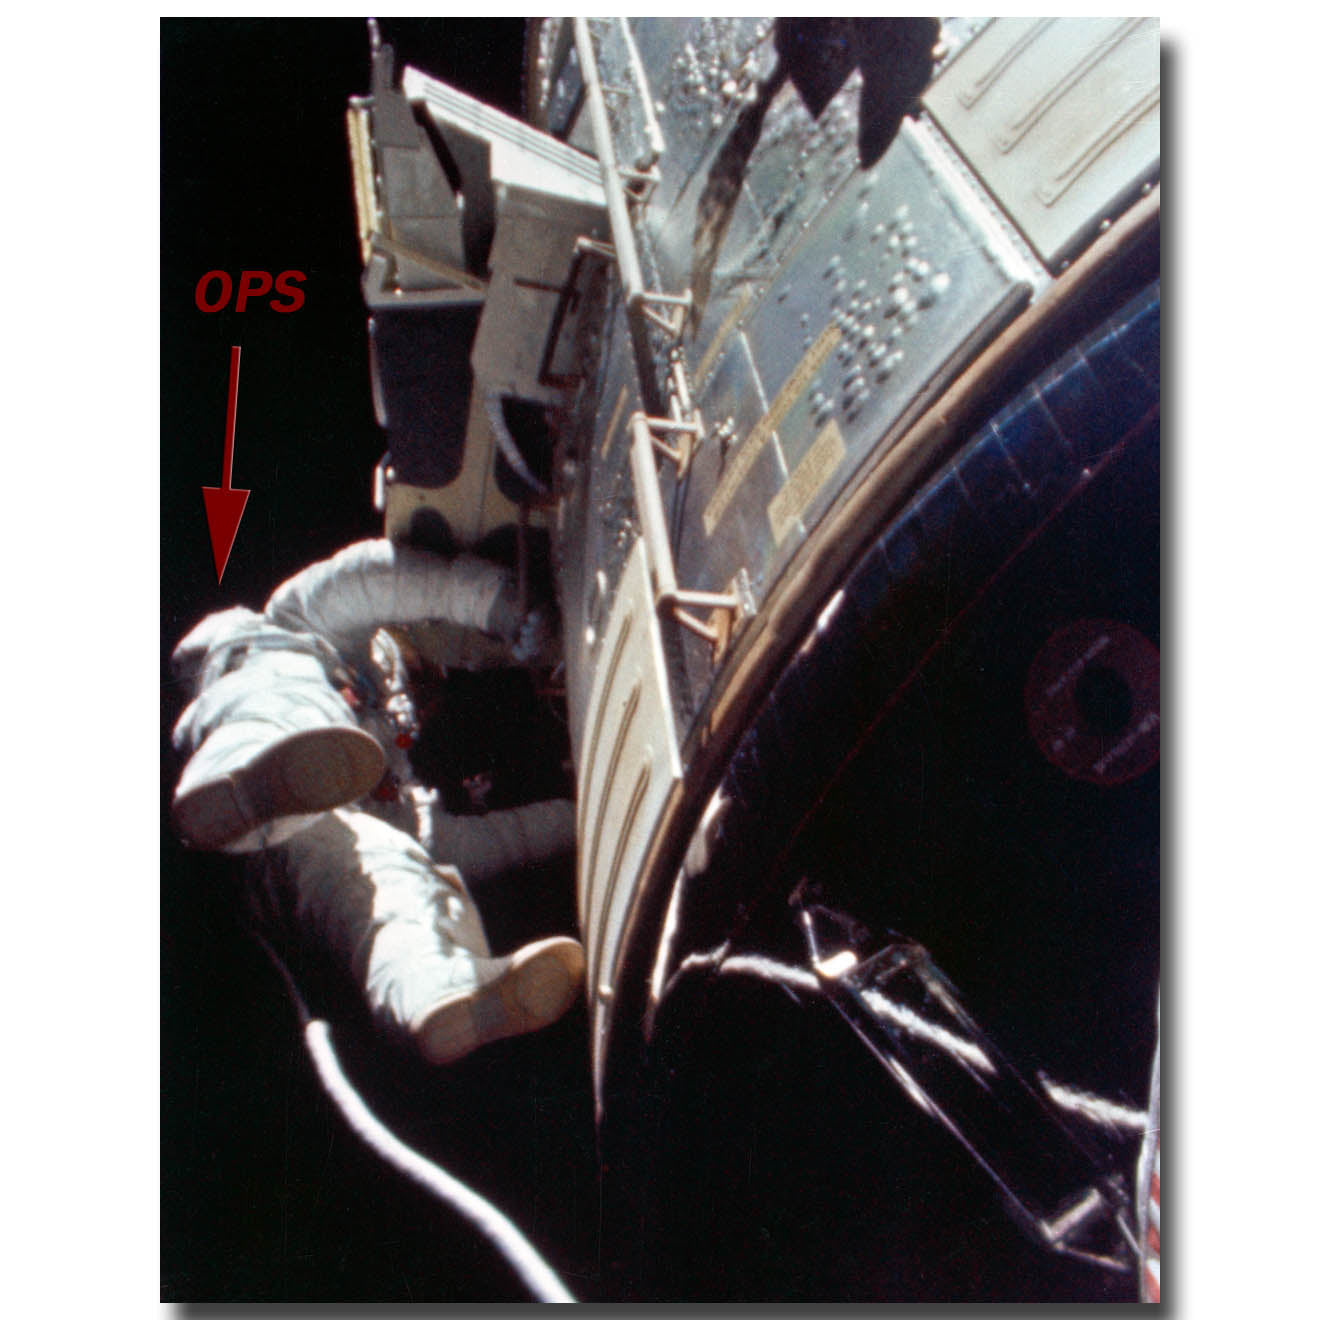 Apollo 15 AL Worden deep space EVA - artifact presentation